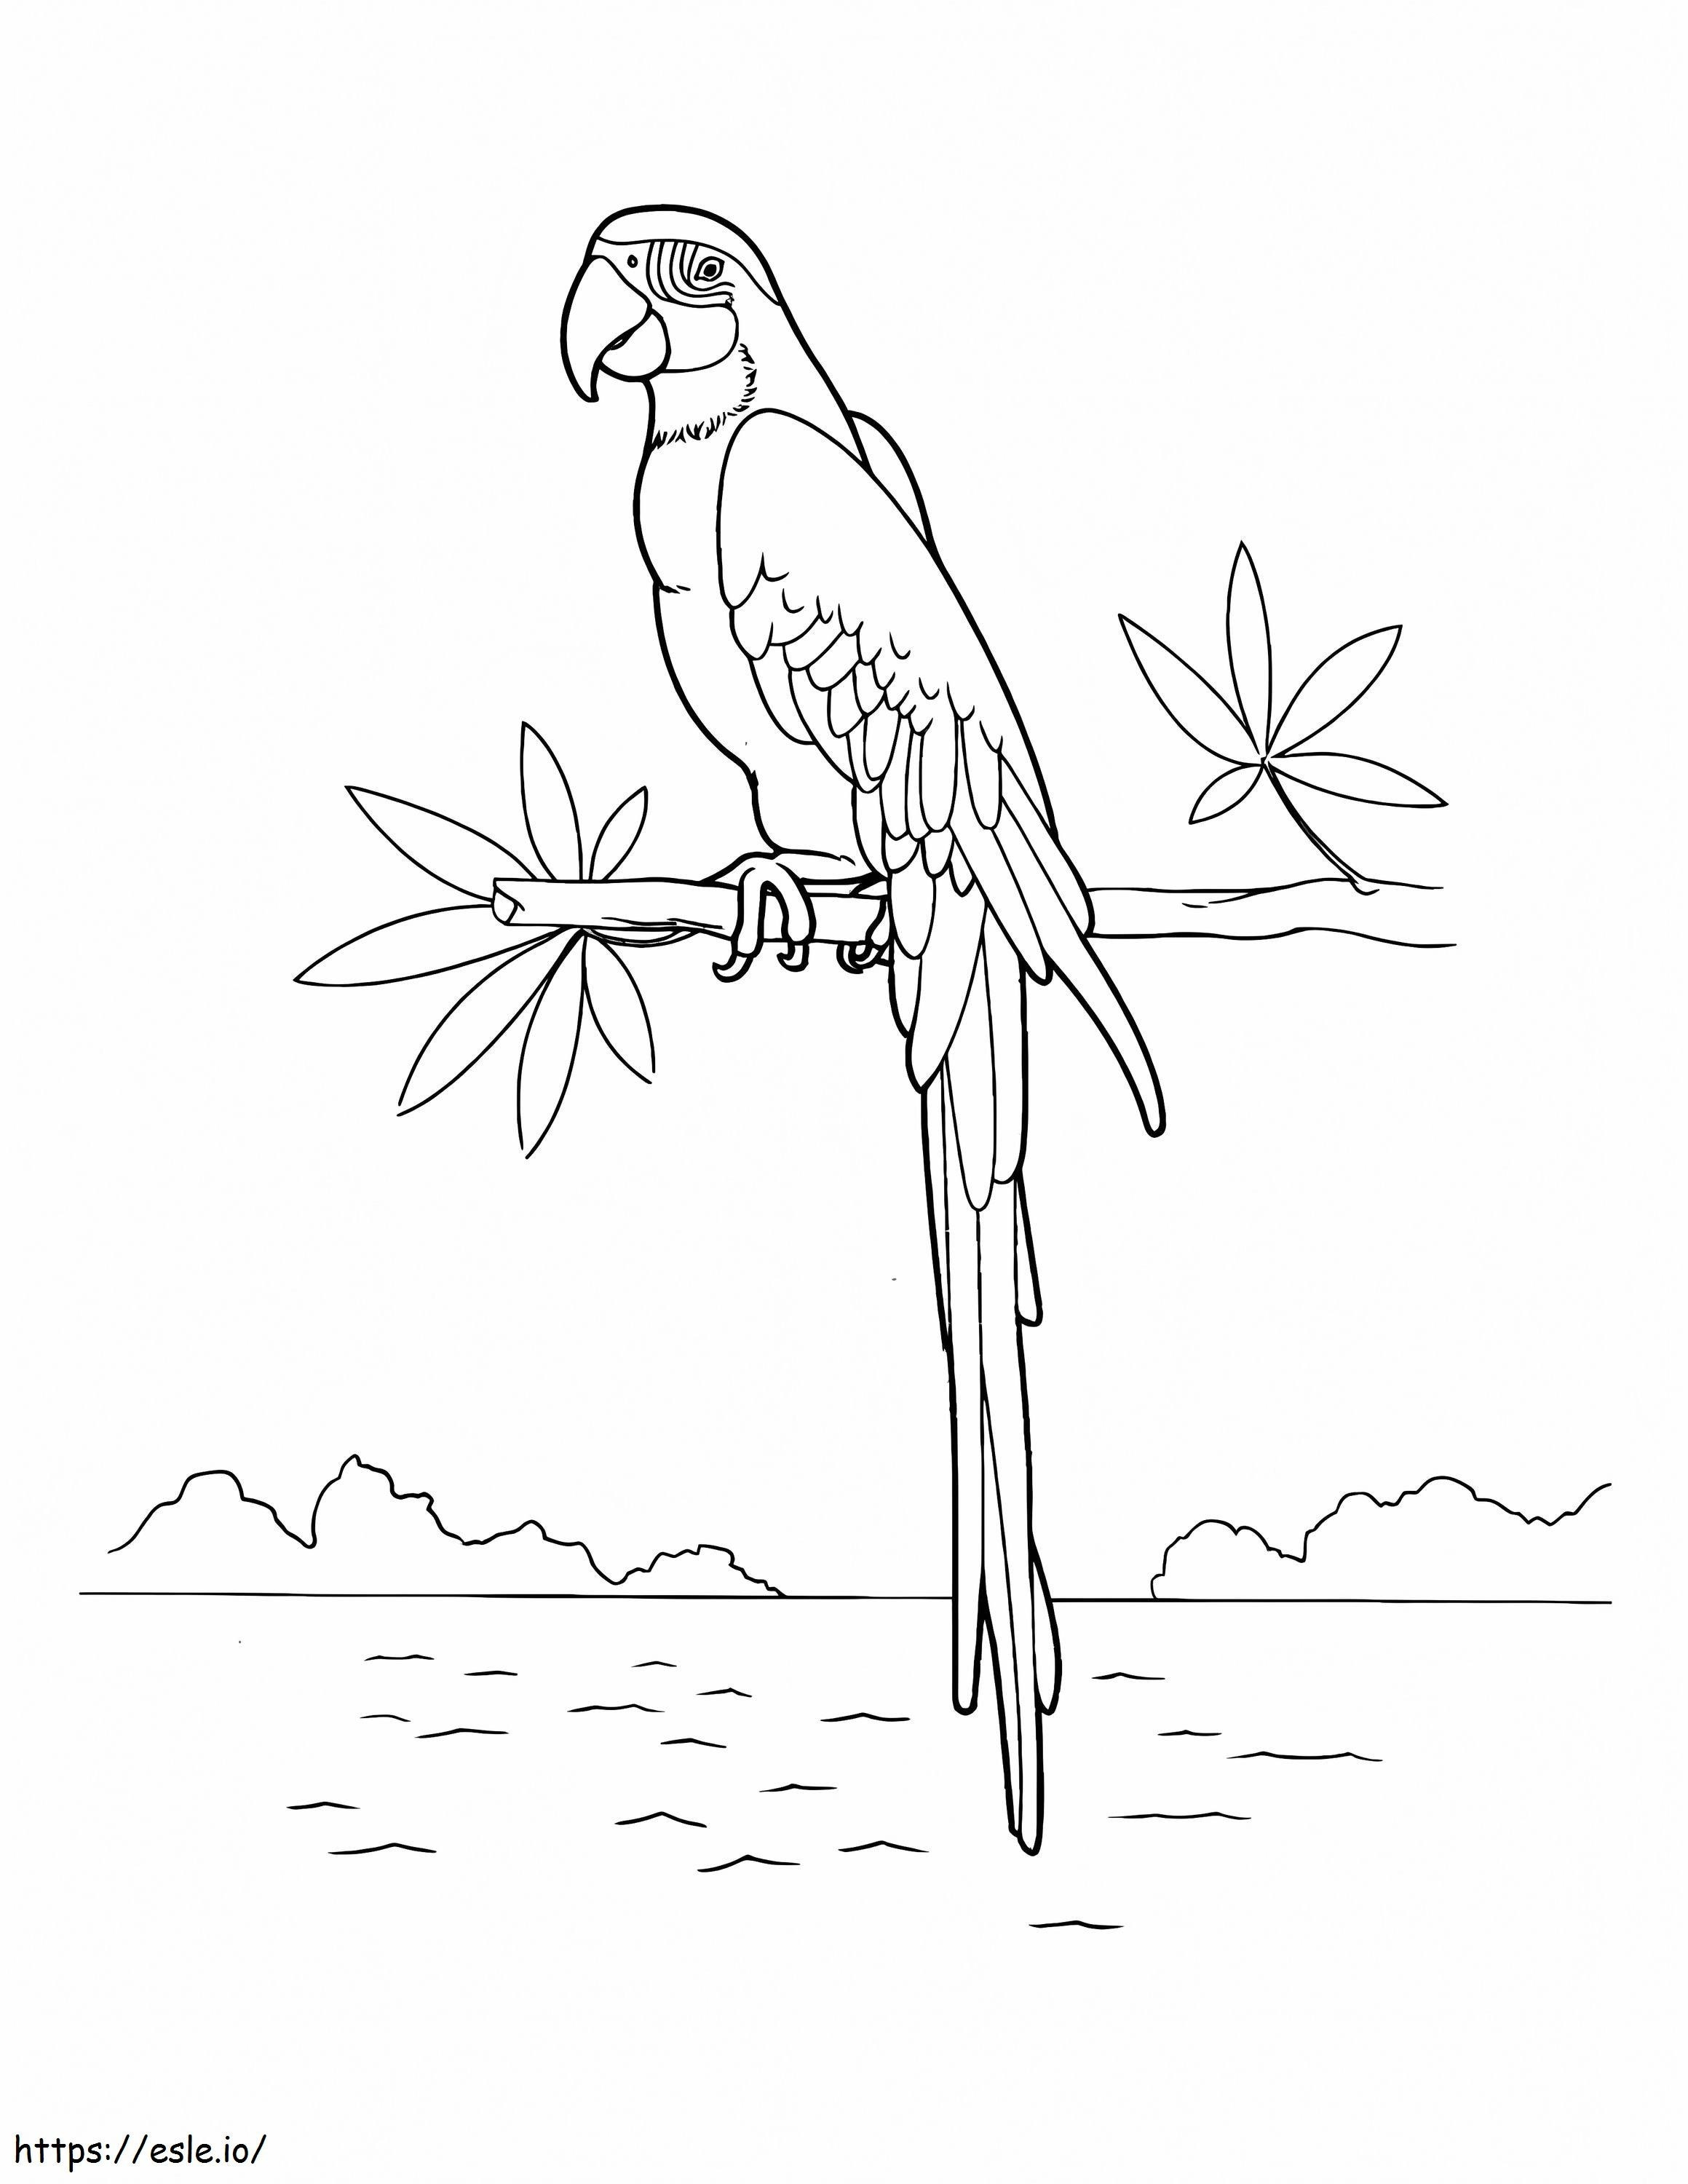 Macaw Cocoțat Pe vârful unui copac lângă malul râului de colorat